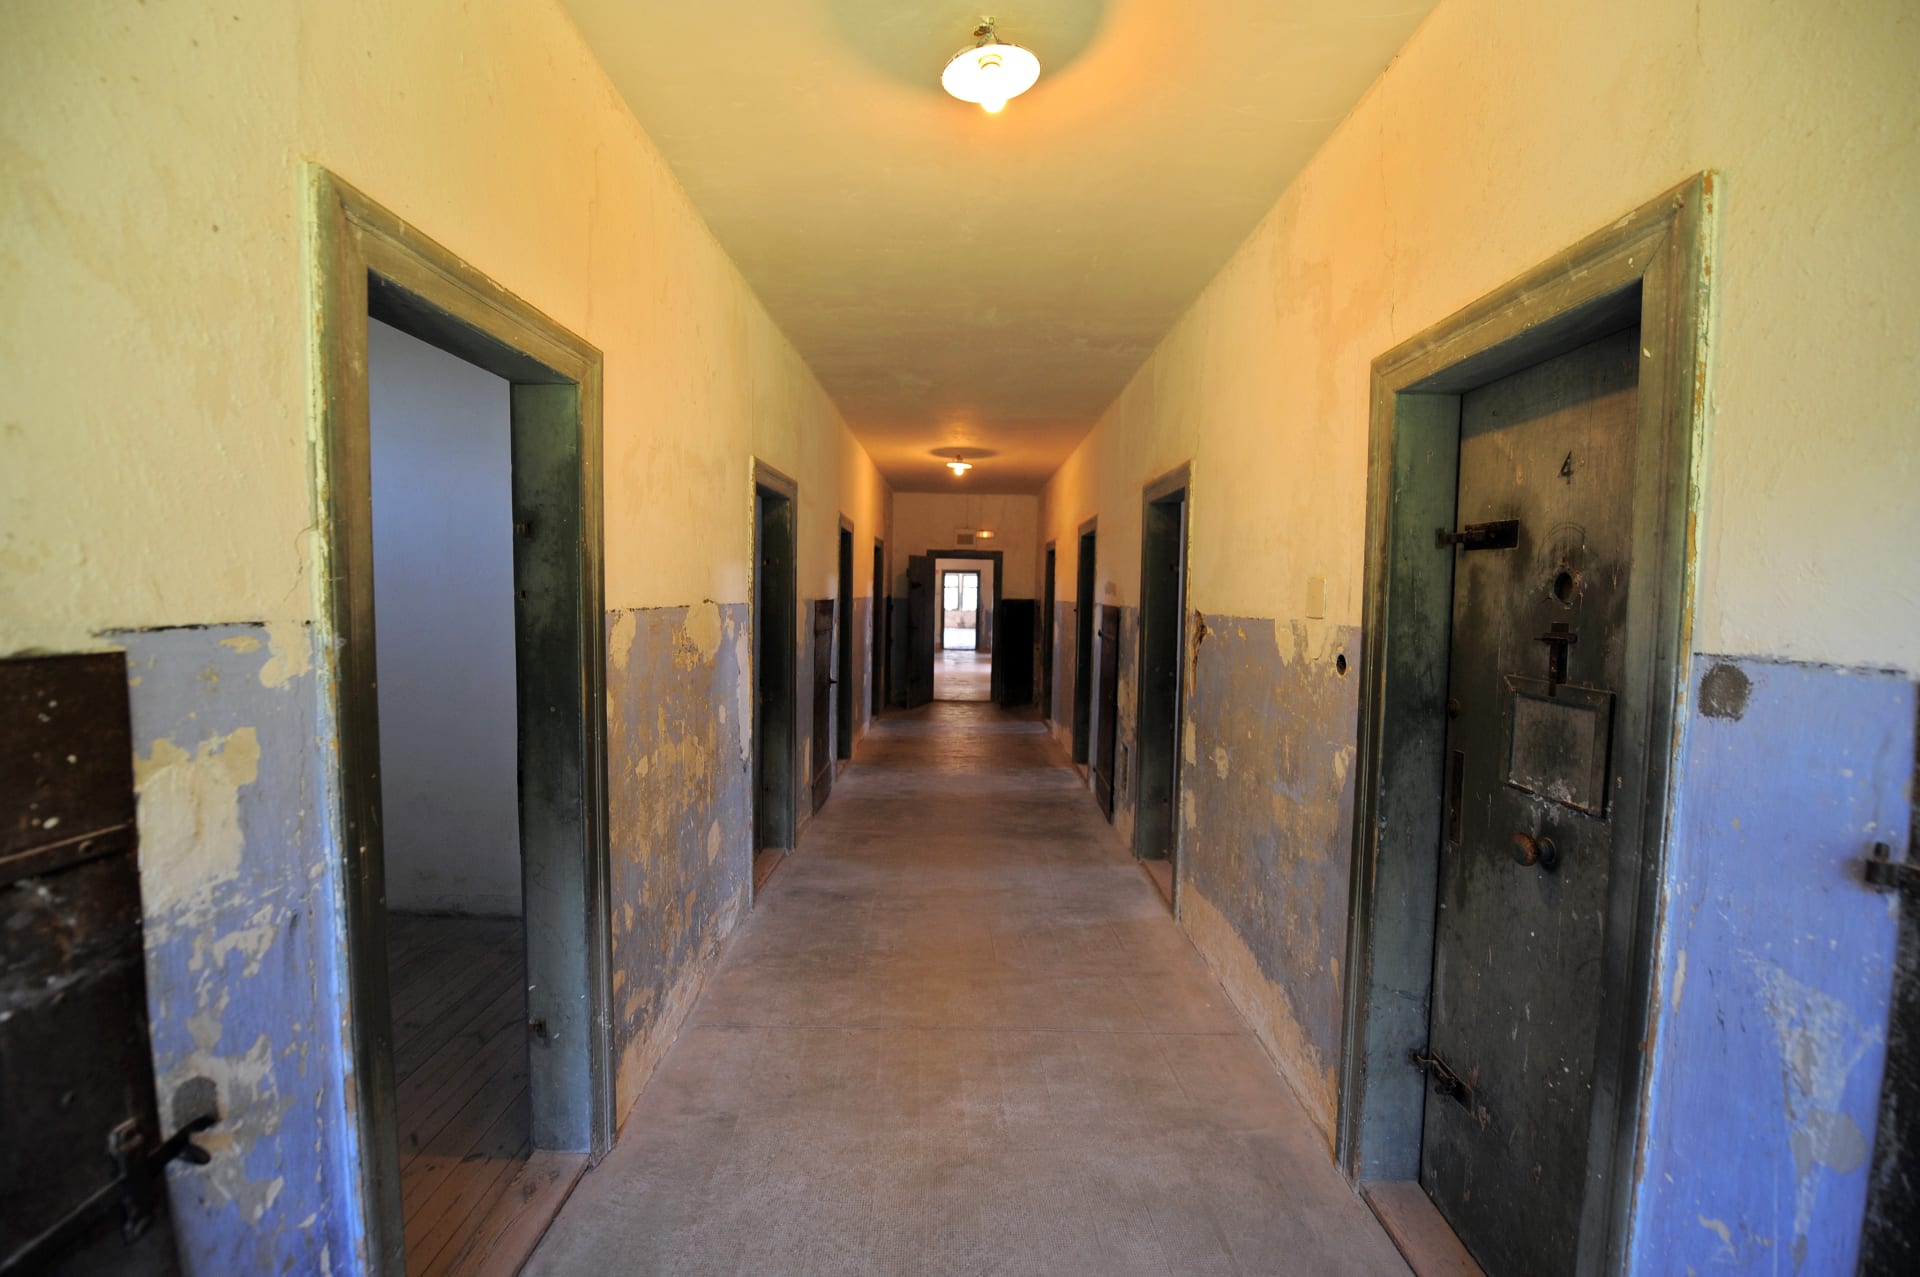 أمريكا: اتهام مسؤول في منشأة لإعادة تأهيل سجينات بالاعتداء على عدد منهن